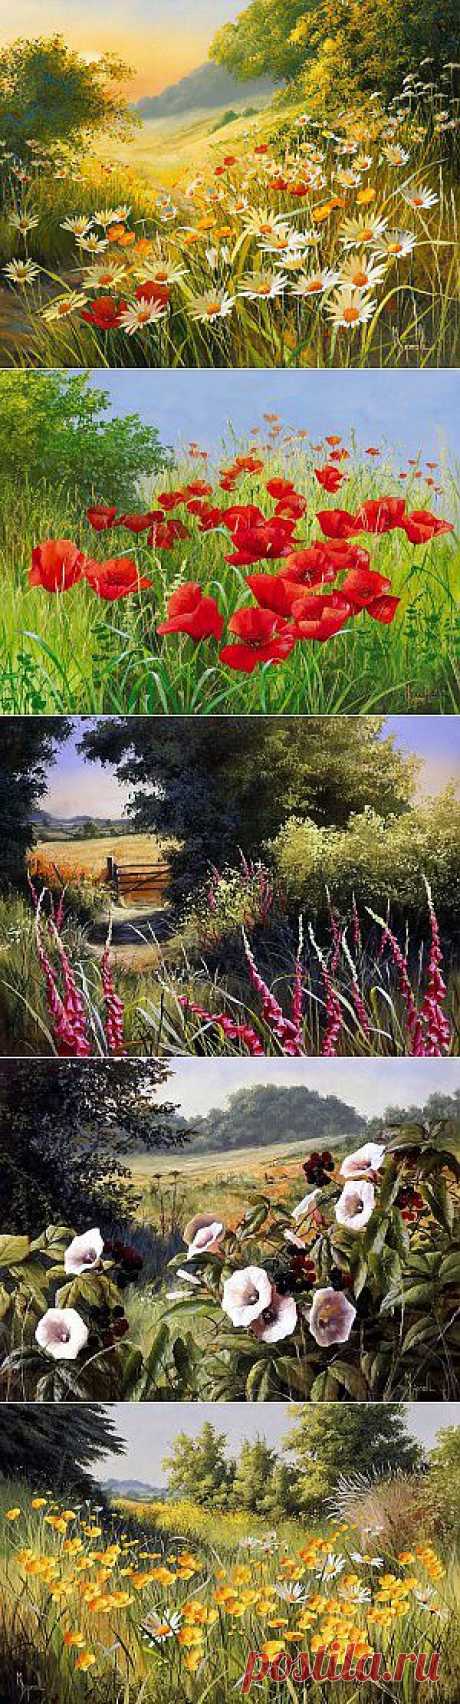 живопись цветы пейзаж поле Mary Dipnall | Интересные Картинки. Фотографии, обои на рабочий стол, рисунки и графика